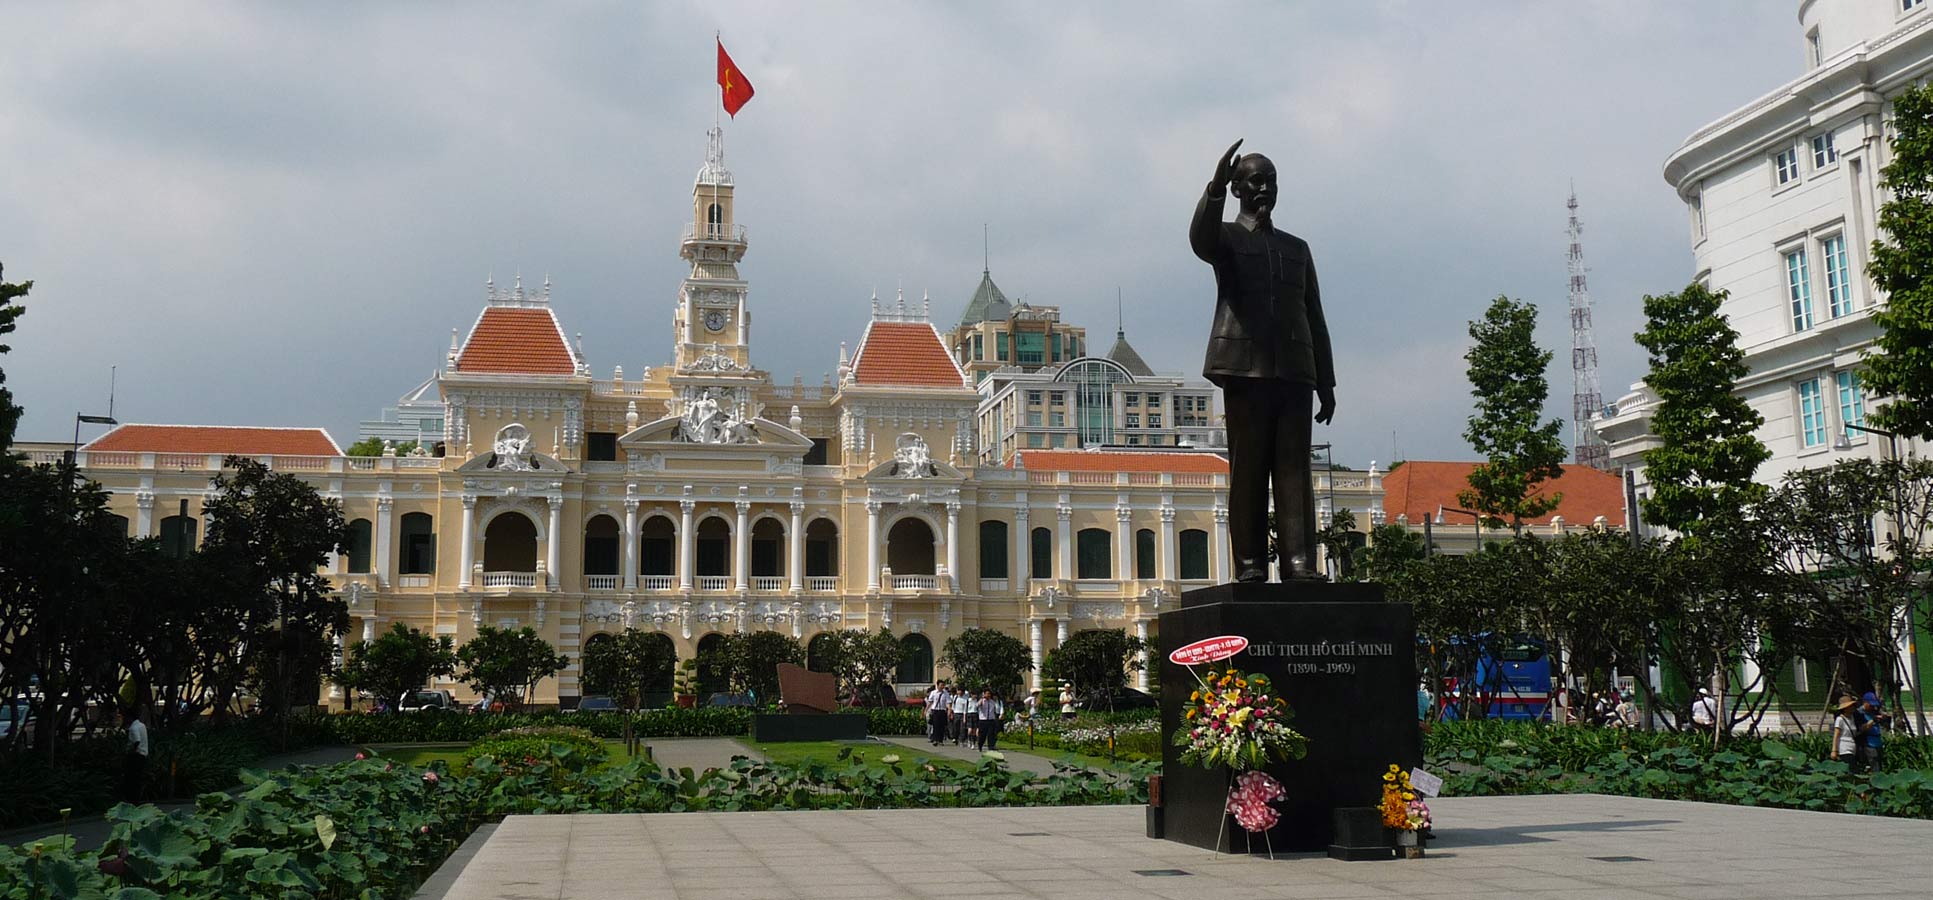 Vietnam travel reviews, Saigon, Ho Chi Minh